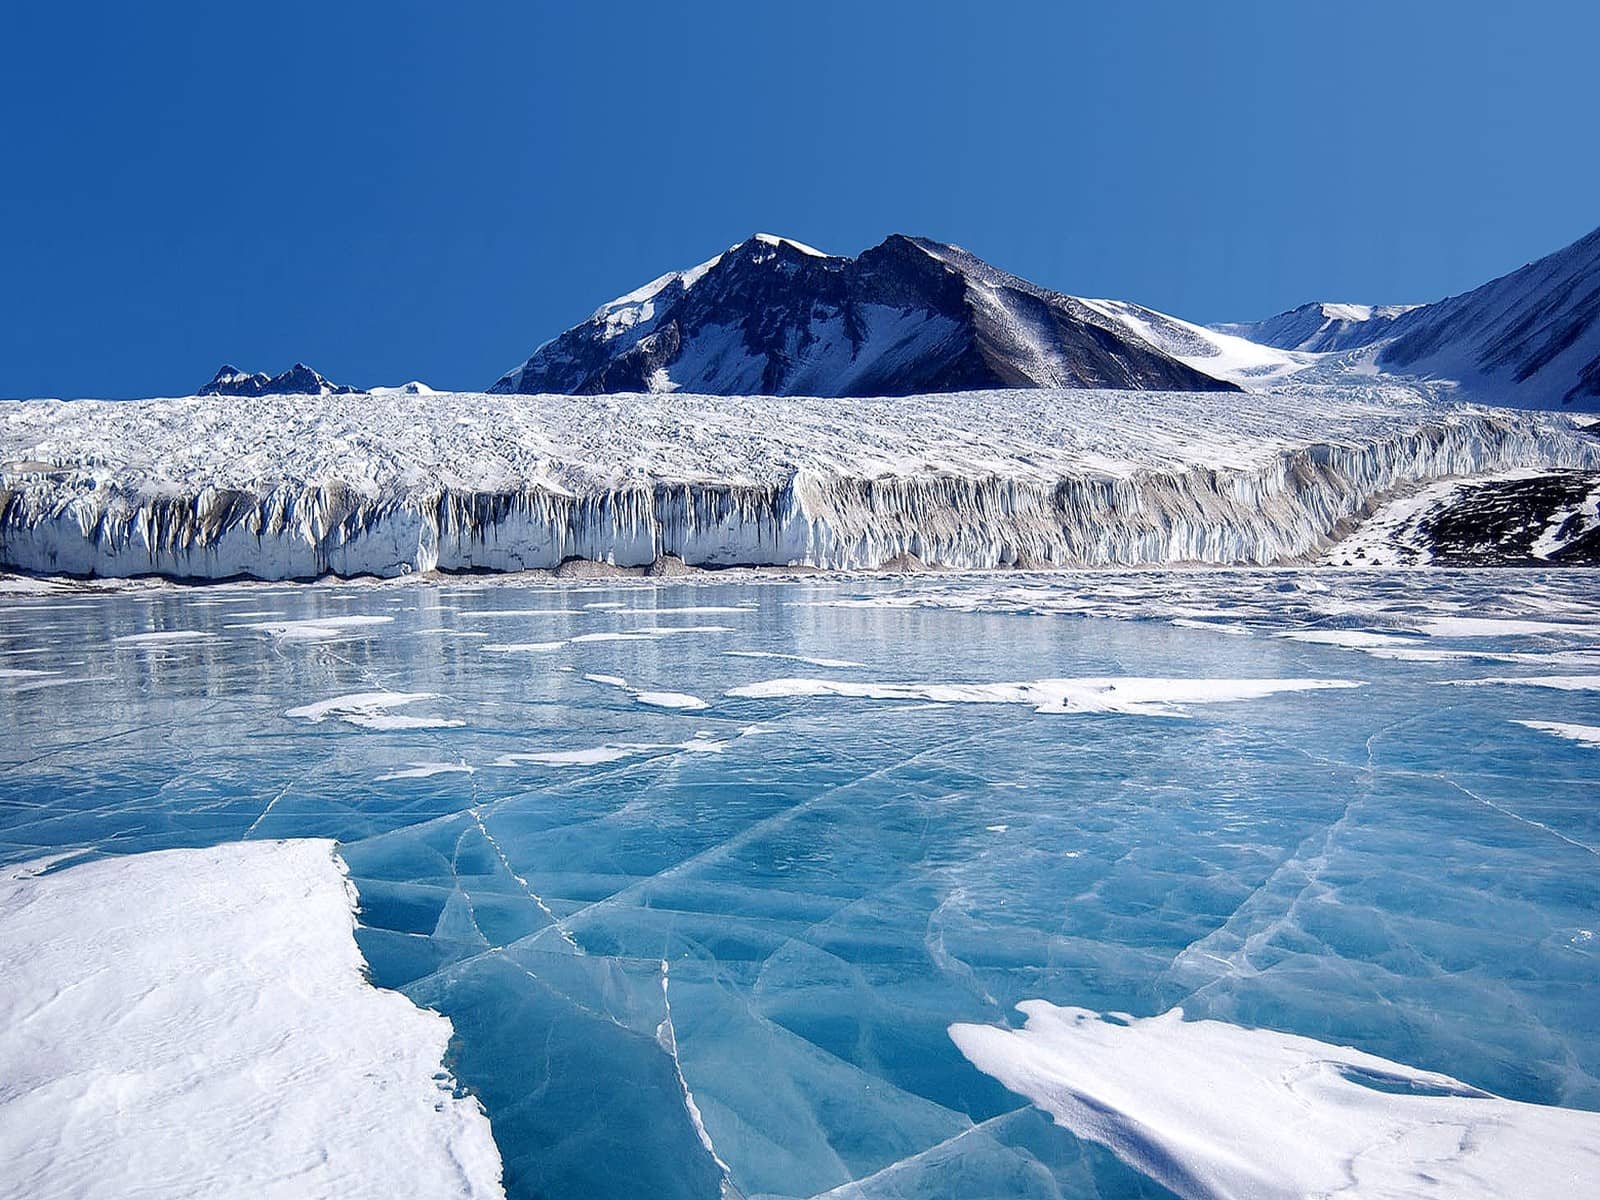 ladakh fond d'écran hd,la glace,lac glaciaire,glacier,océan arctique,iceberg